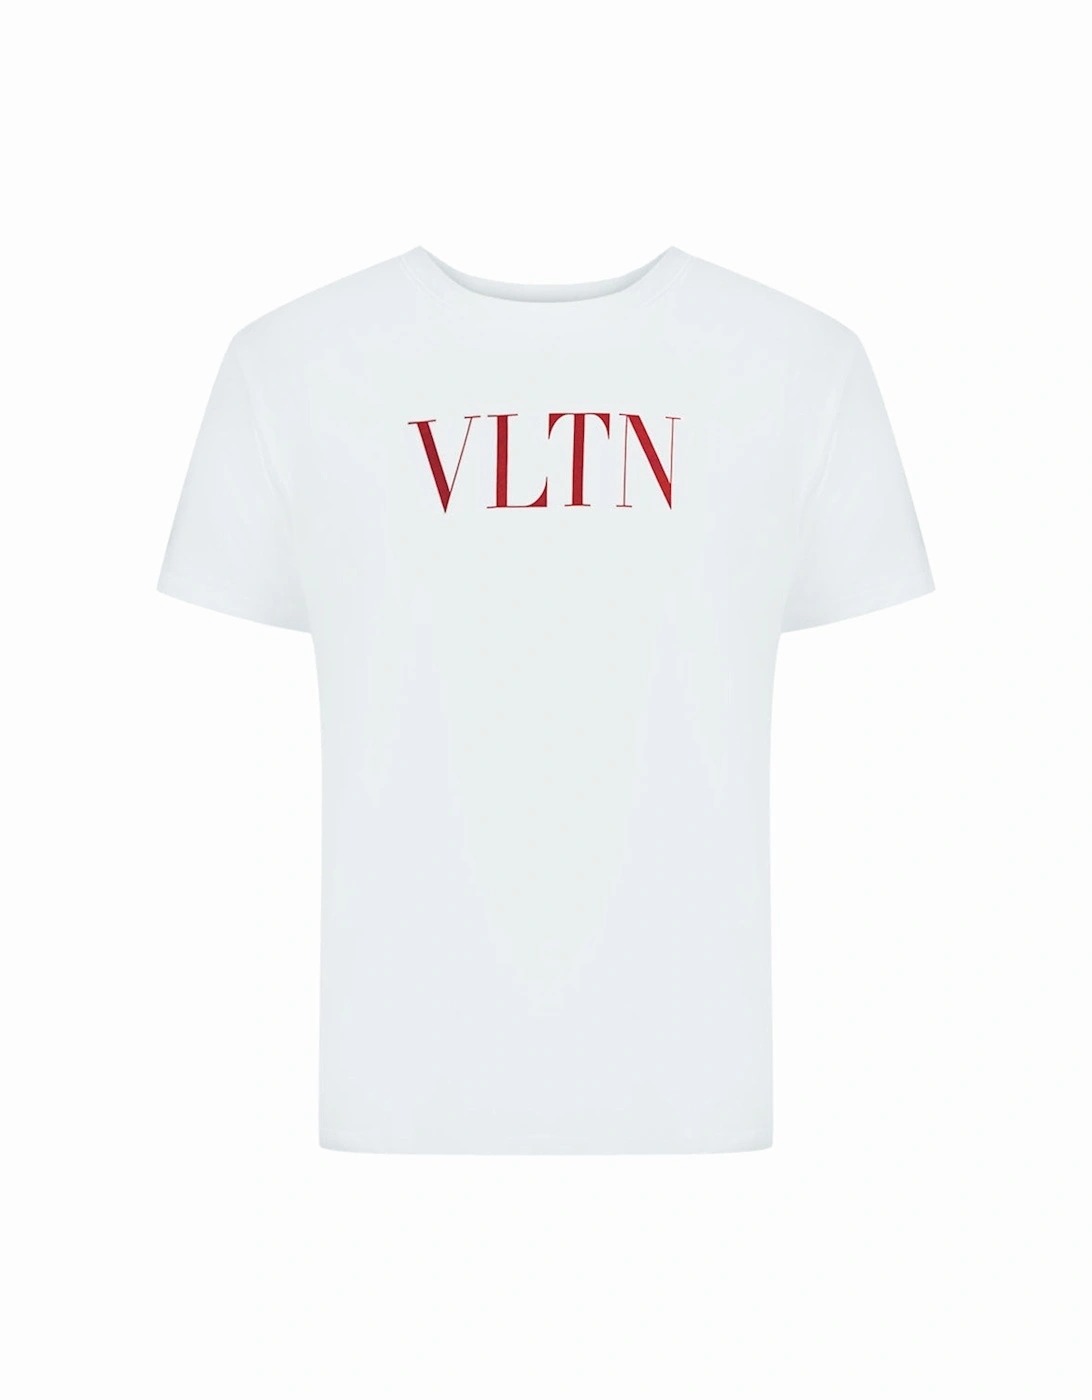 VLTN Logo White T-Shirt, 2 of 1